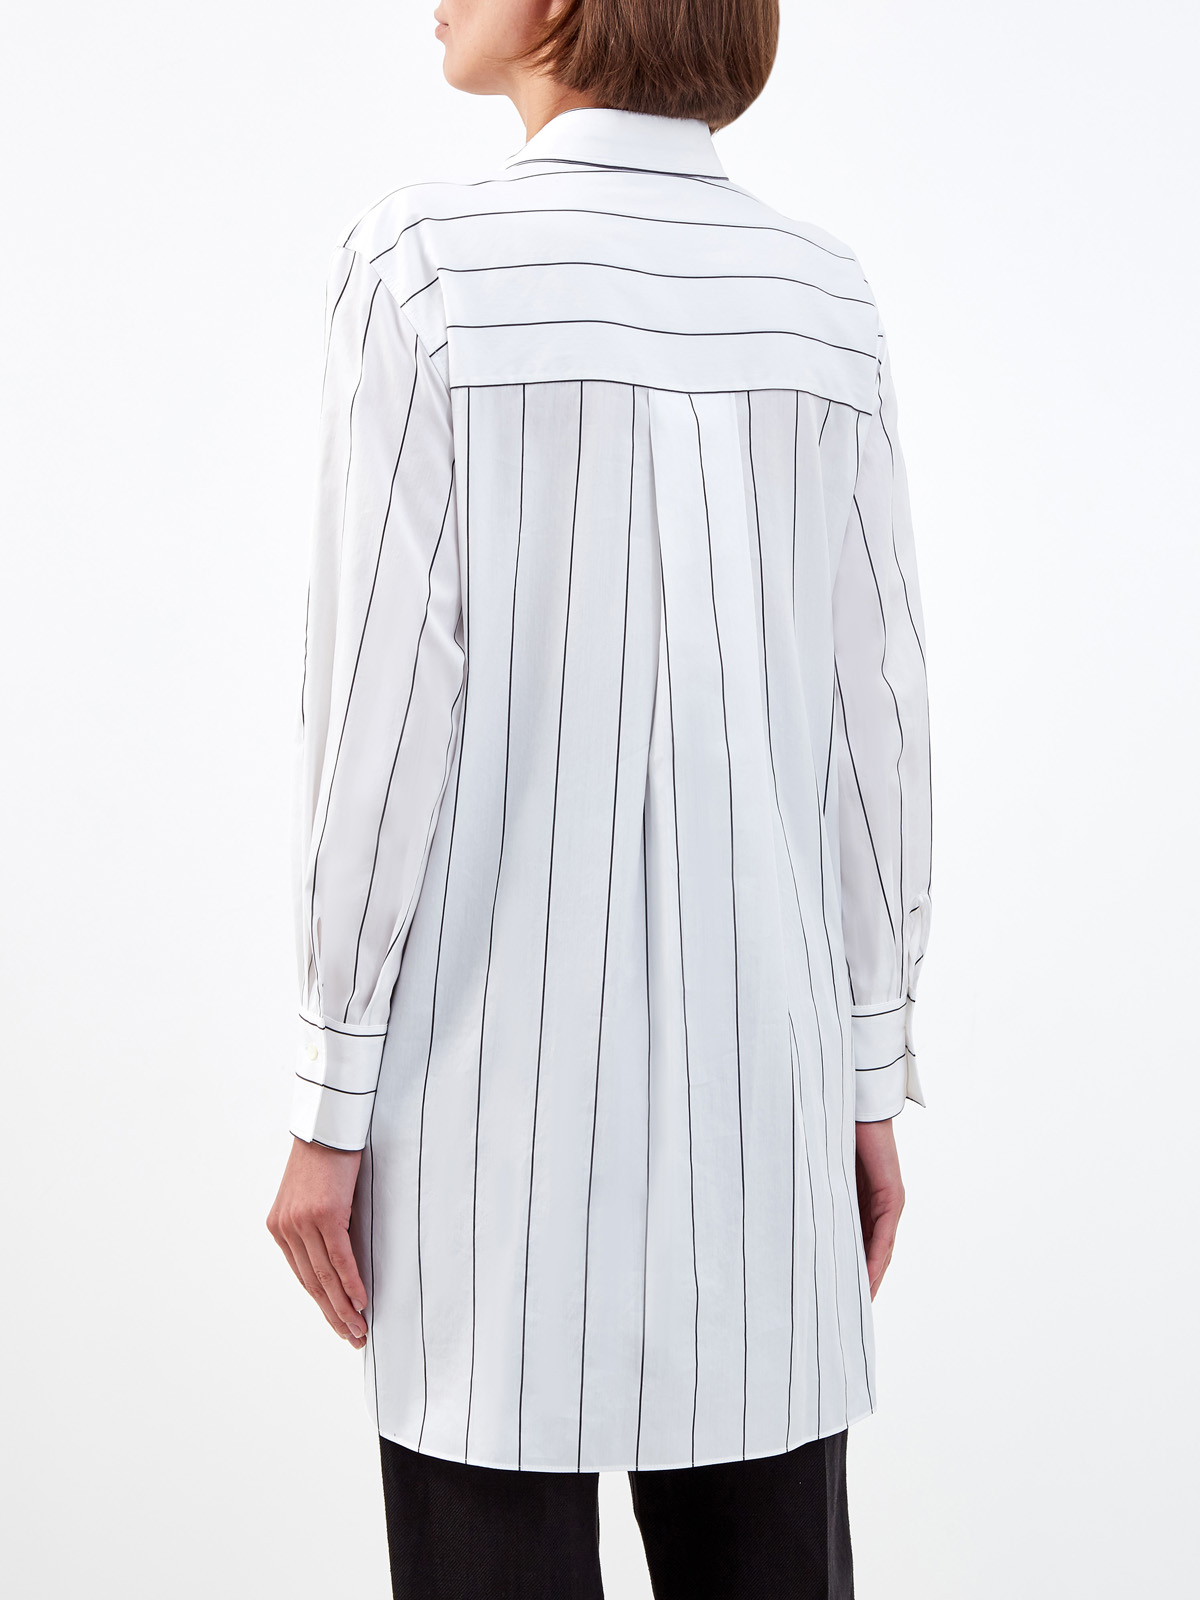 Удлиненная рубашка из хлопка и шелка с принтом в полоску BRUNELLO CUCINELLI, цвет белый, размер 38;42;46;48;40 - фото 4